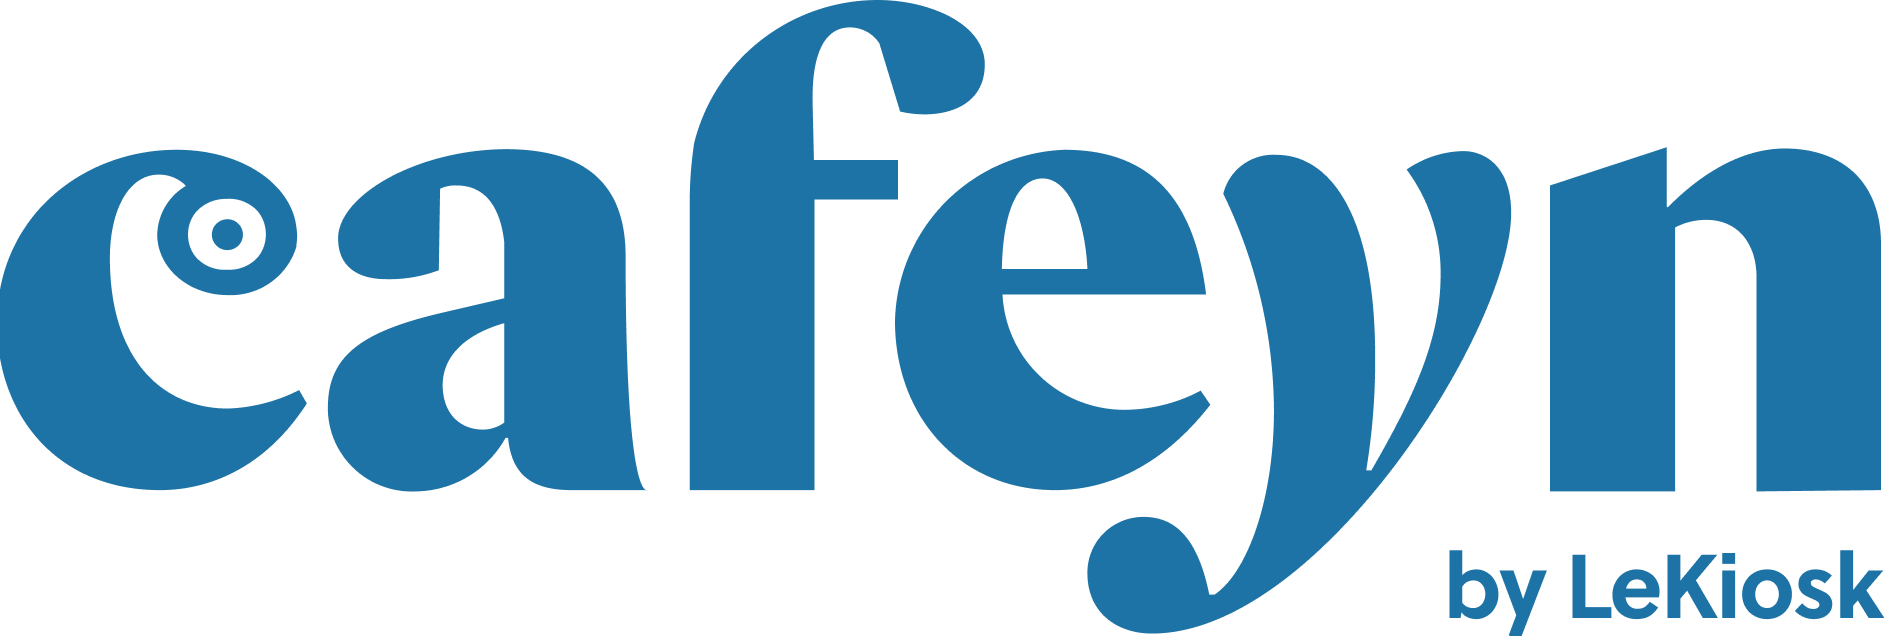 logo_cafeyn